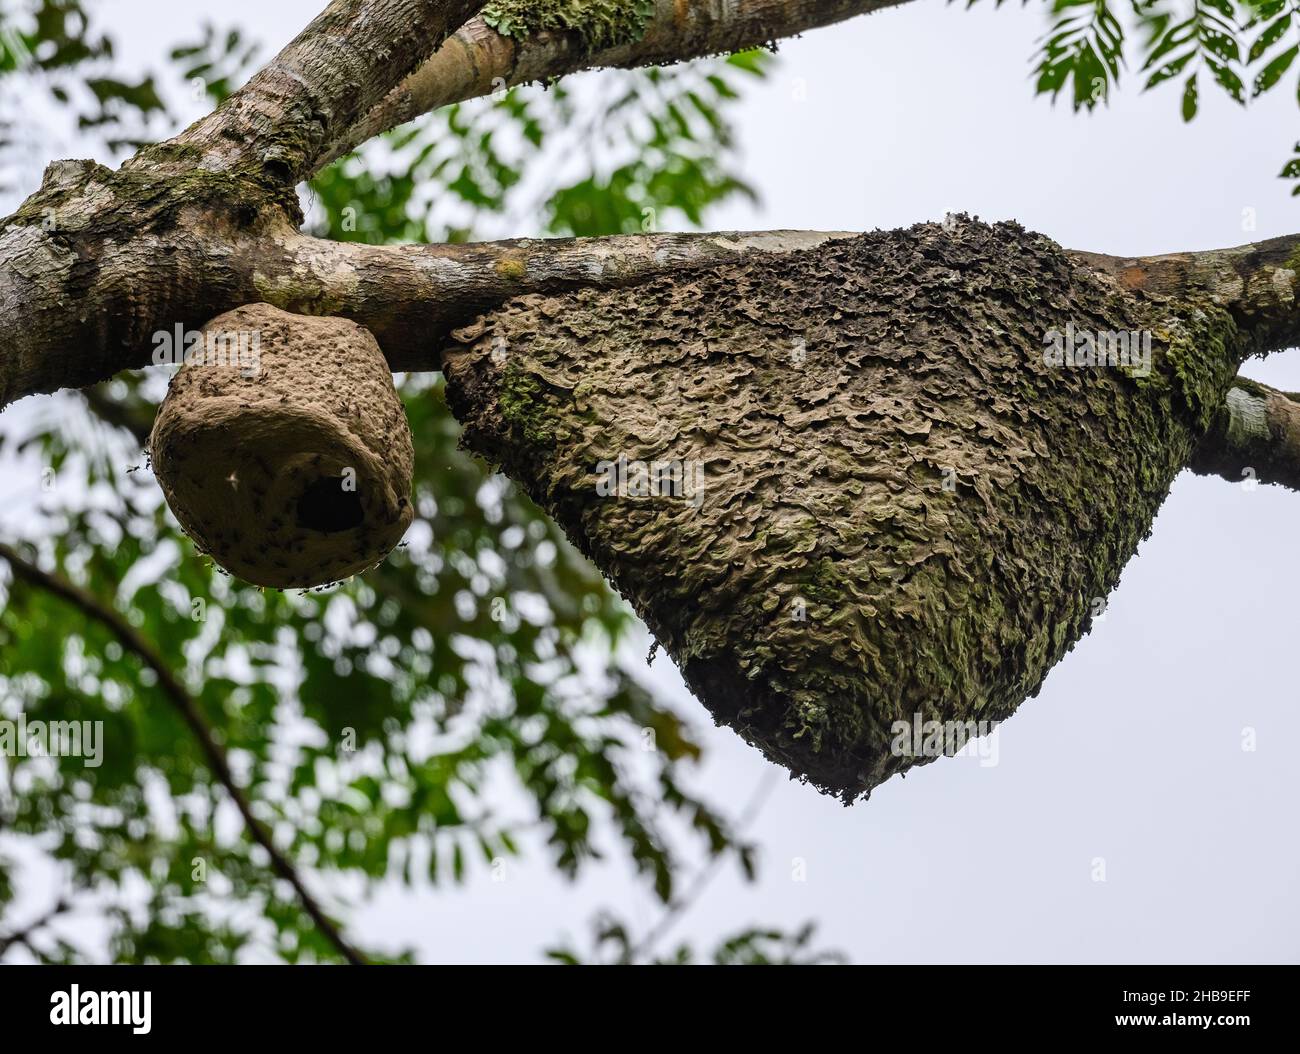 Un nido di termite e un nido di vespa appeso su un ramo. Podocarpus National Park, Ecuador, Sud America. Foto Stock